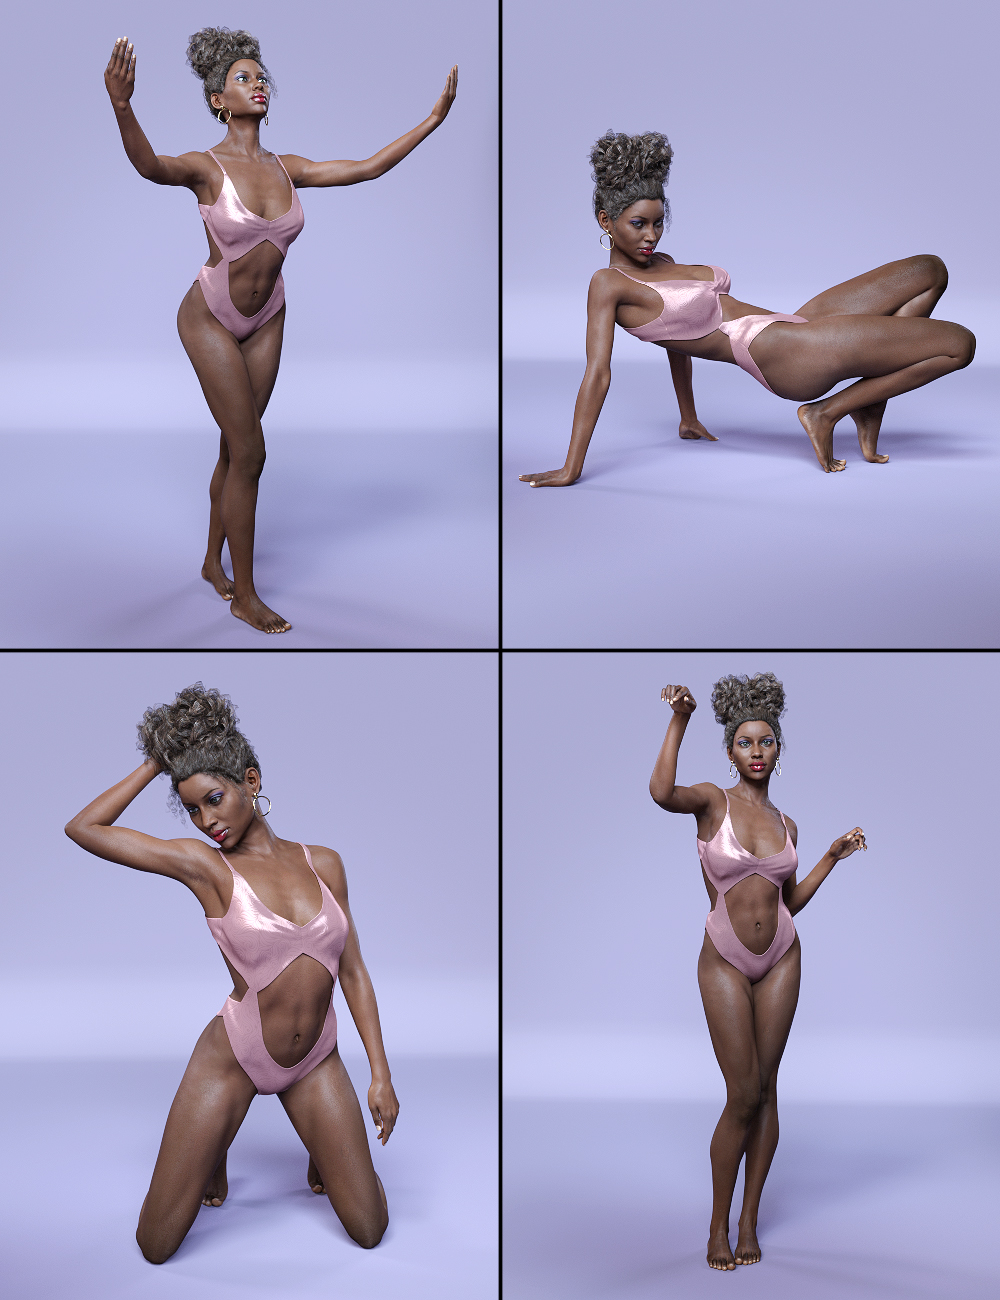 Z Paradise - Poses for Monique 7 & Genesis 3 Female by: Zeddicuss, 3D Models by Daz 3D